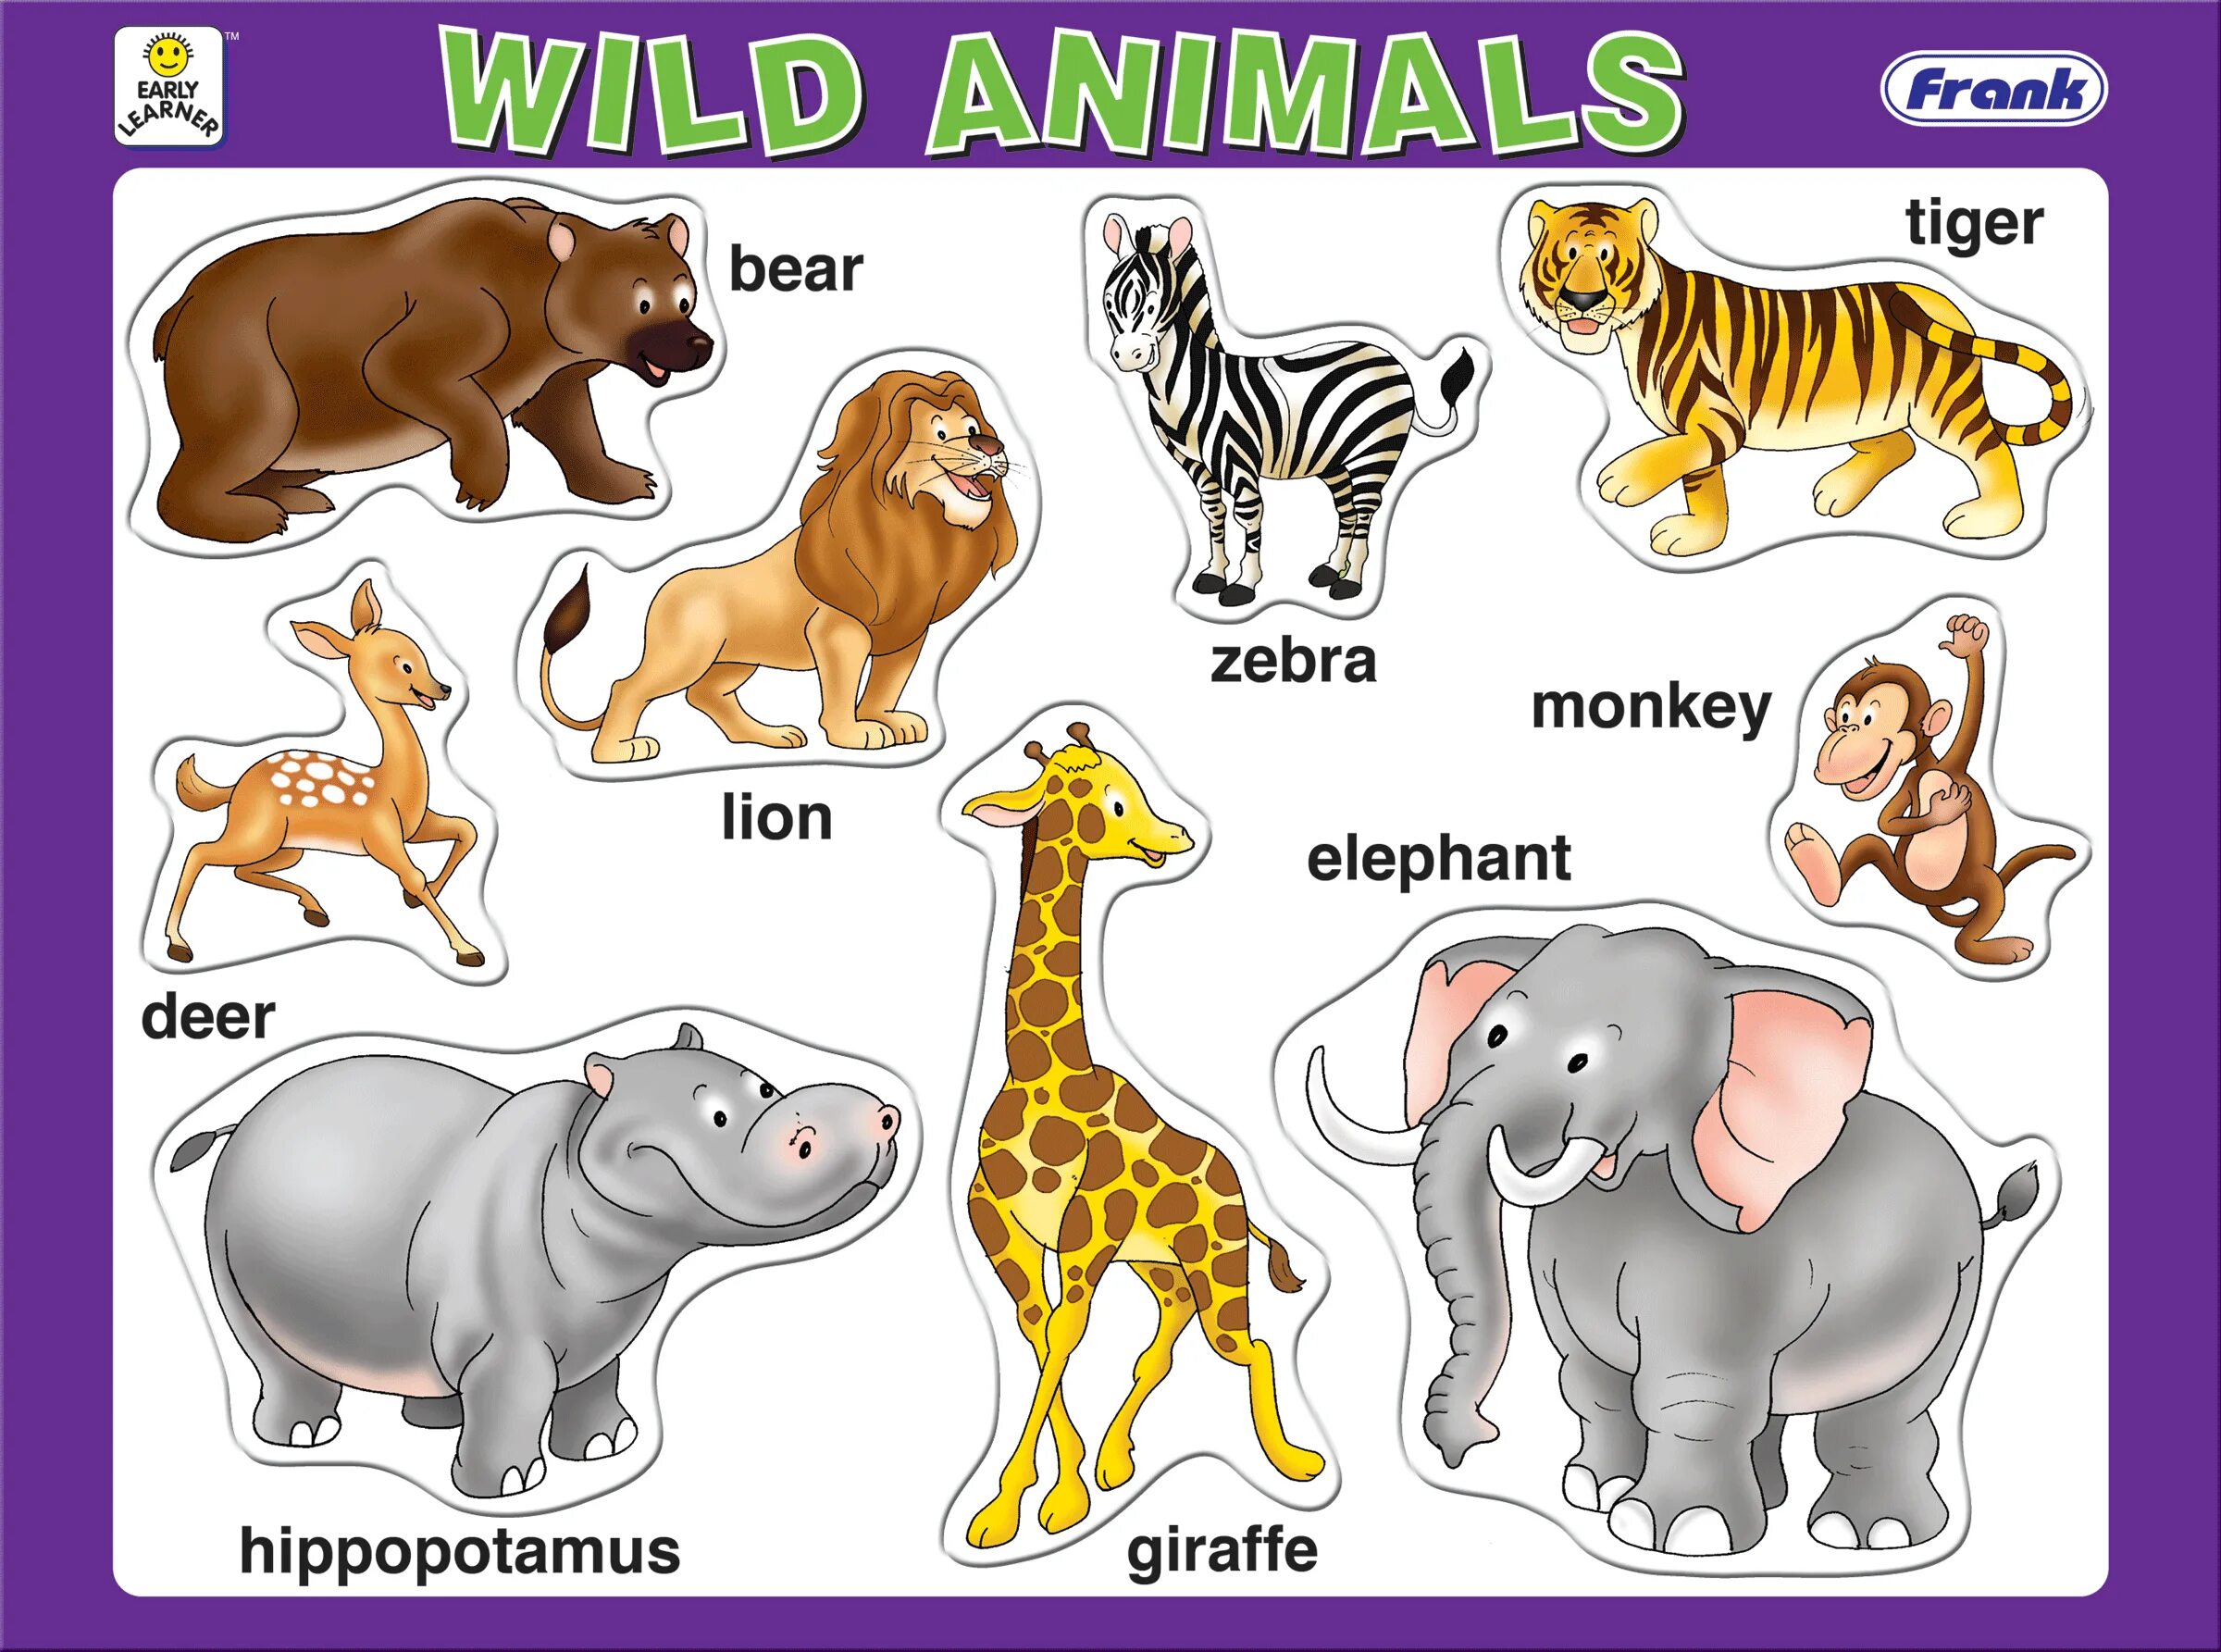 Wild animals as pets essay. Для детей. Животные. Животные на английском для детей. Дикие животные на английском для детей. Изображения животных для детей.